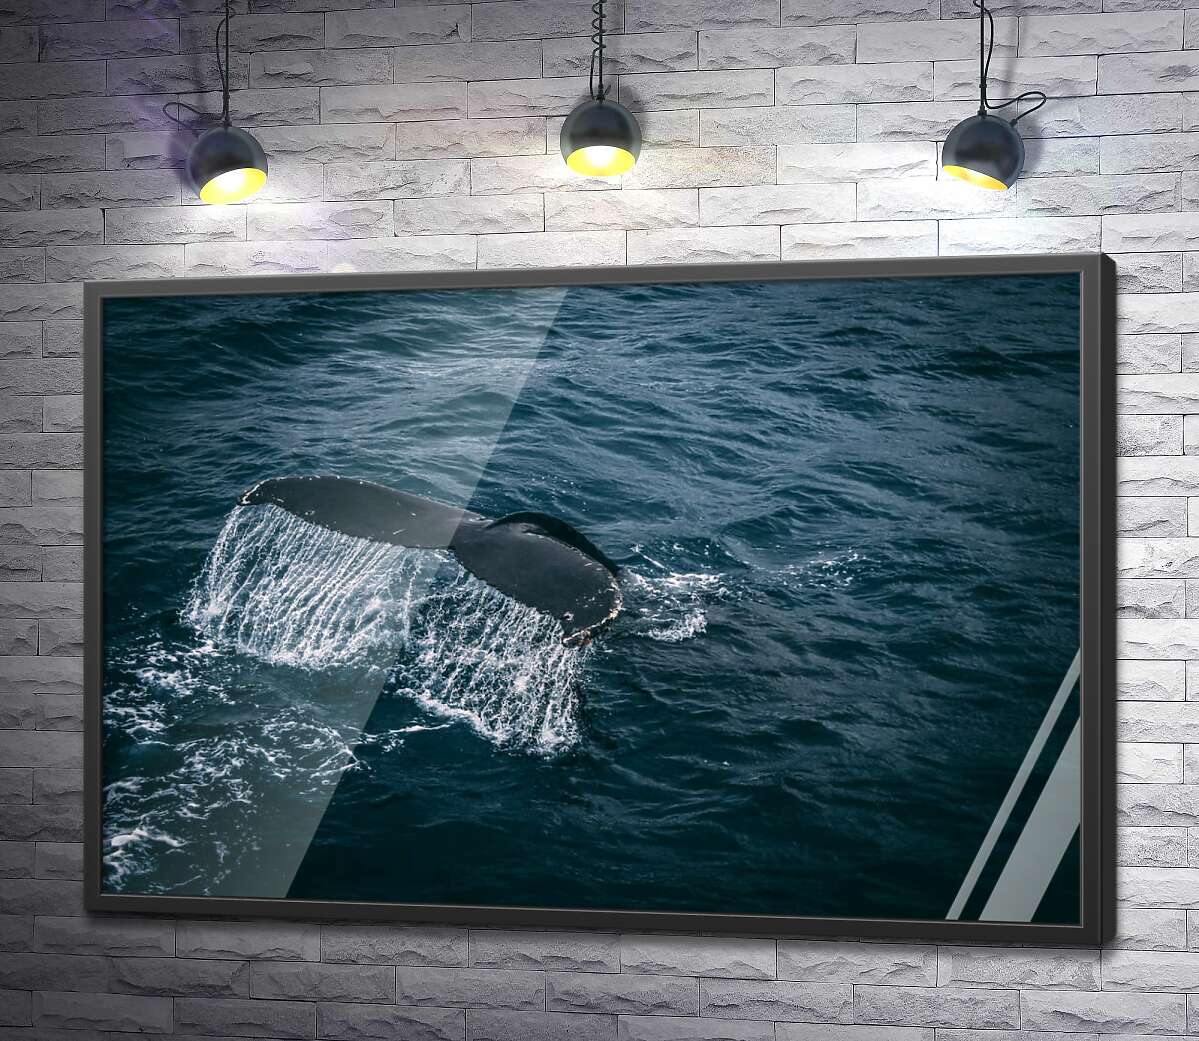 постер Білі струмені води стікають із хвоста кита